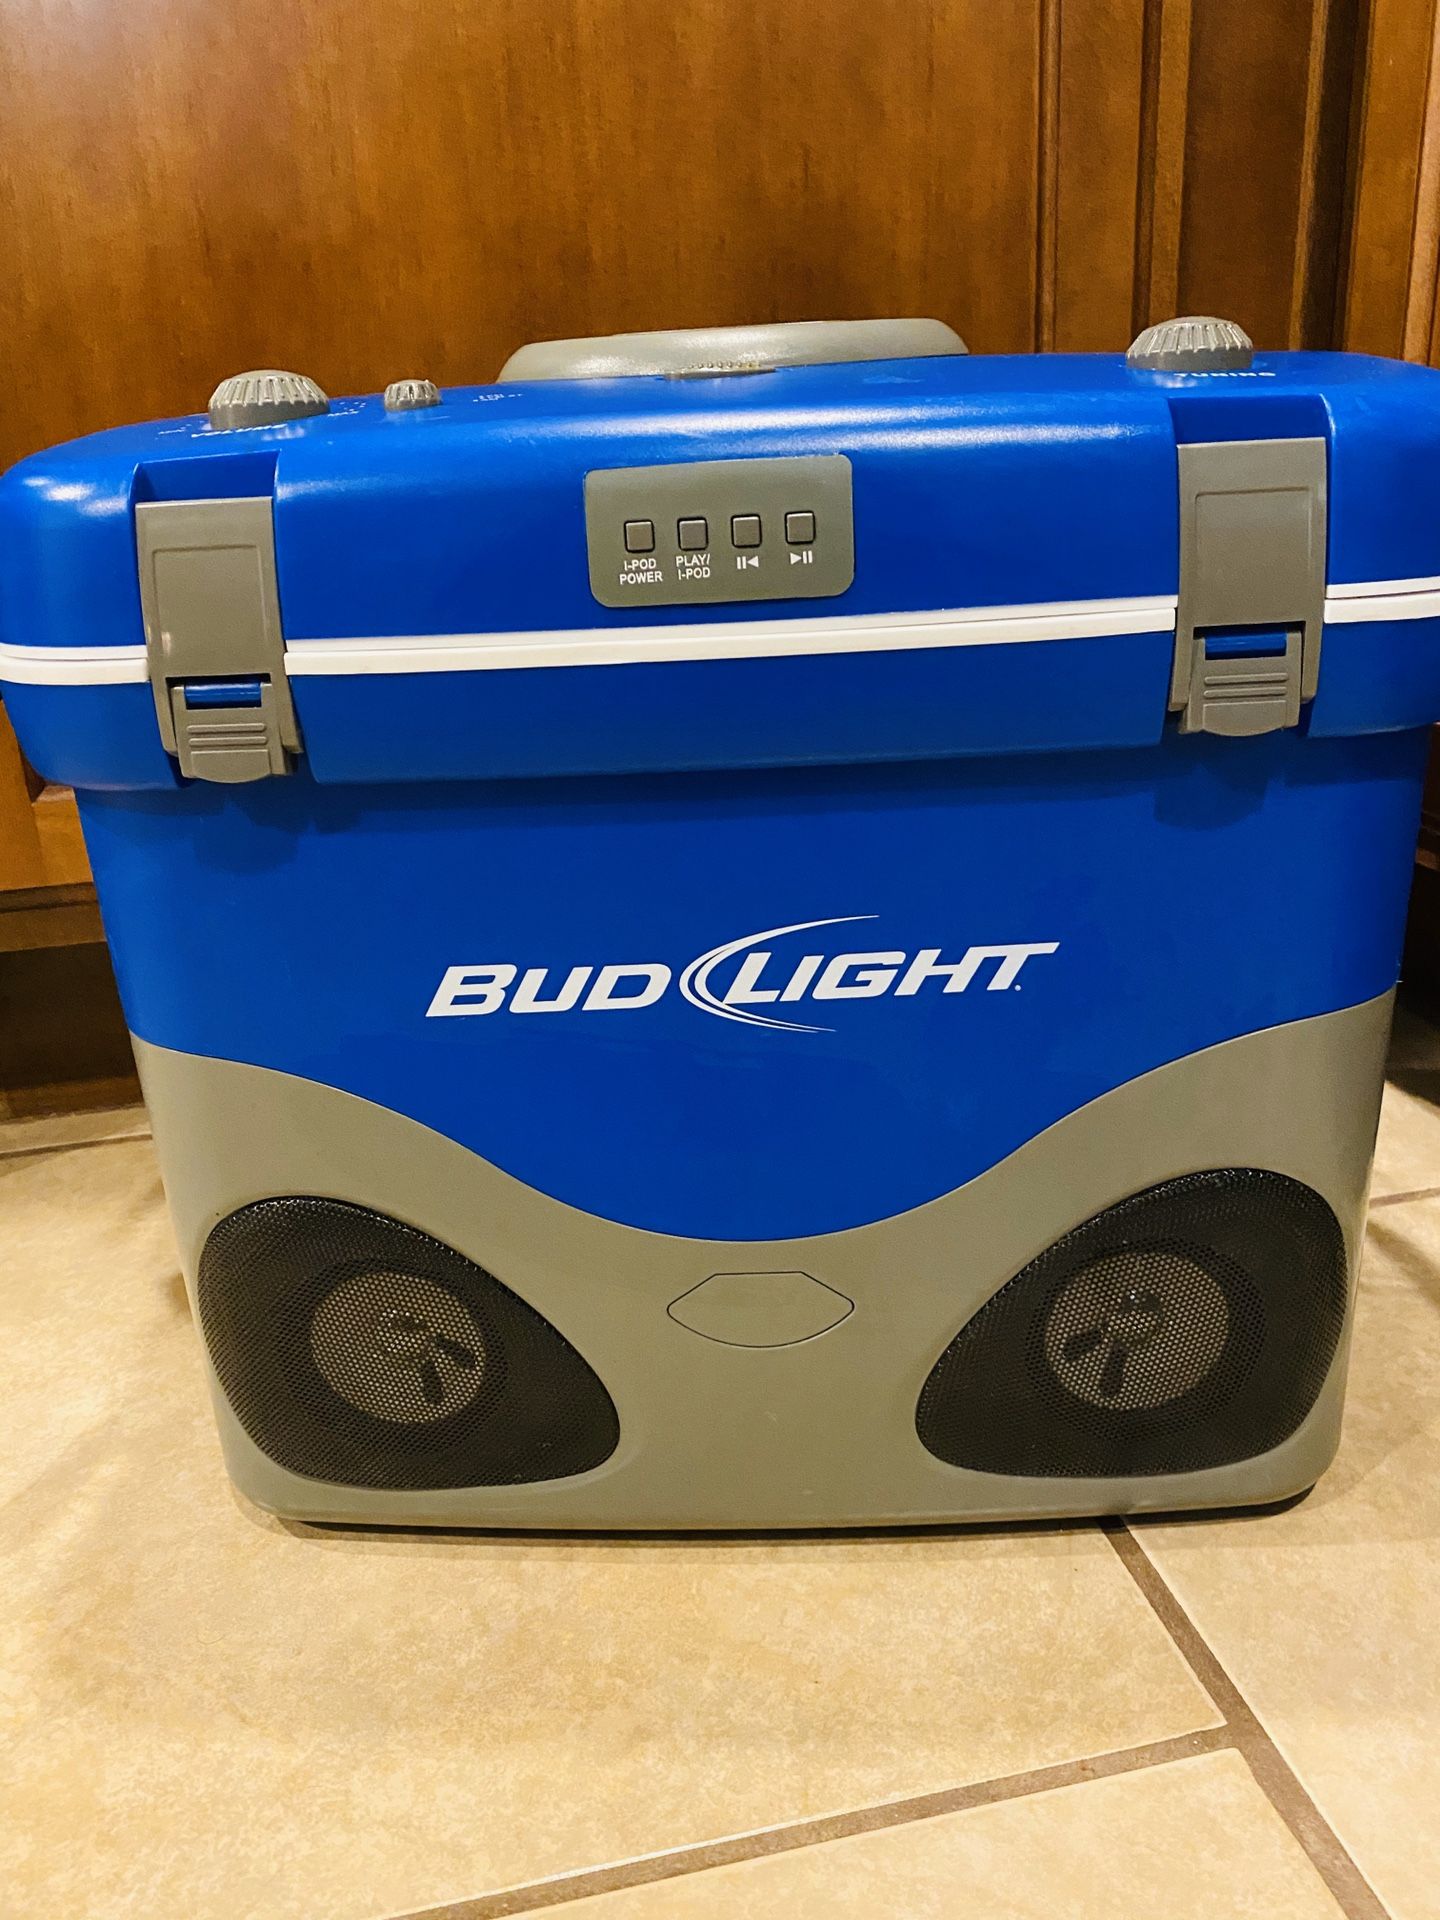 Bud light Cooler Radio!